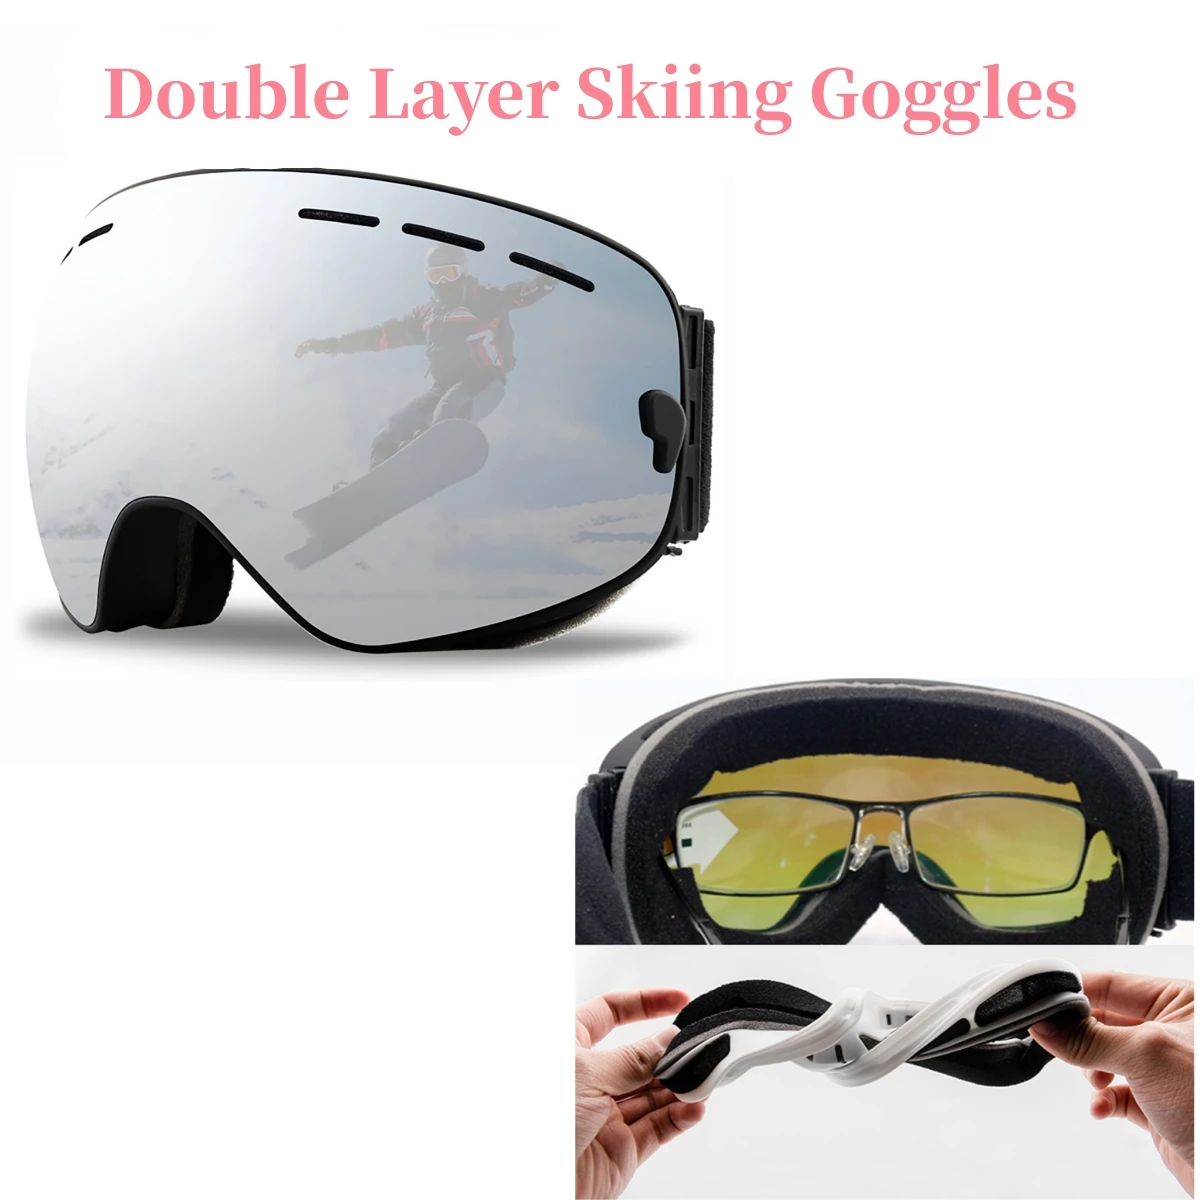 Ski -Snowboardbrillen Mountain Ski -Brillen Schneemobile Winter Sportbrillen Schneegläser Doppelschicht Sonnenbrille zum Klettern